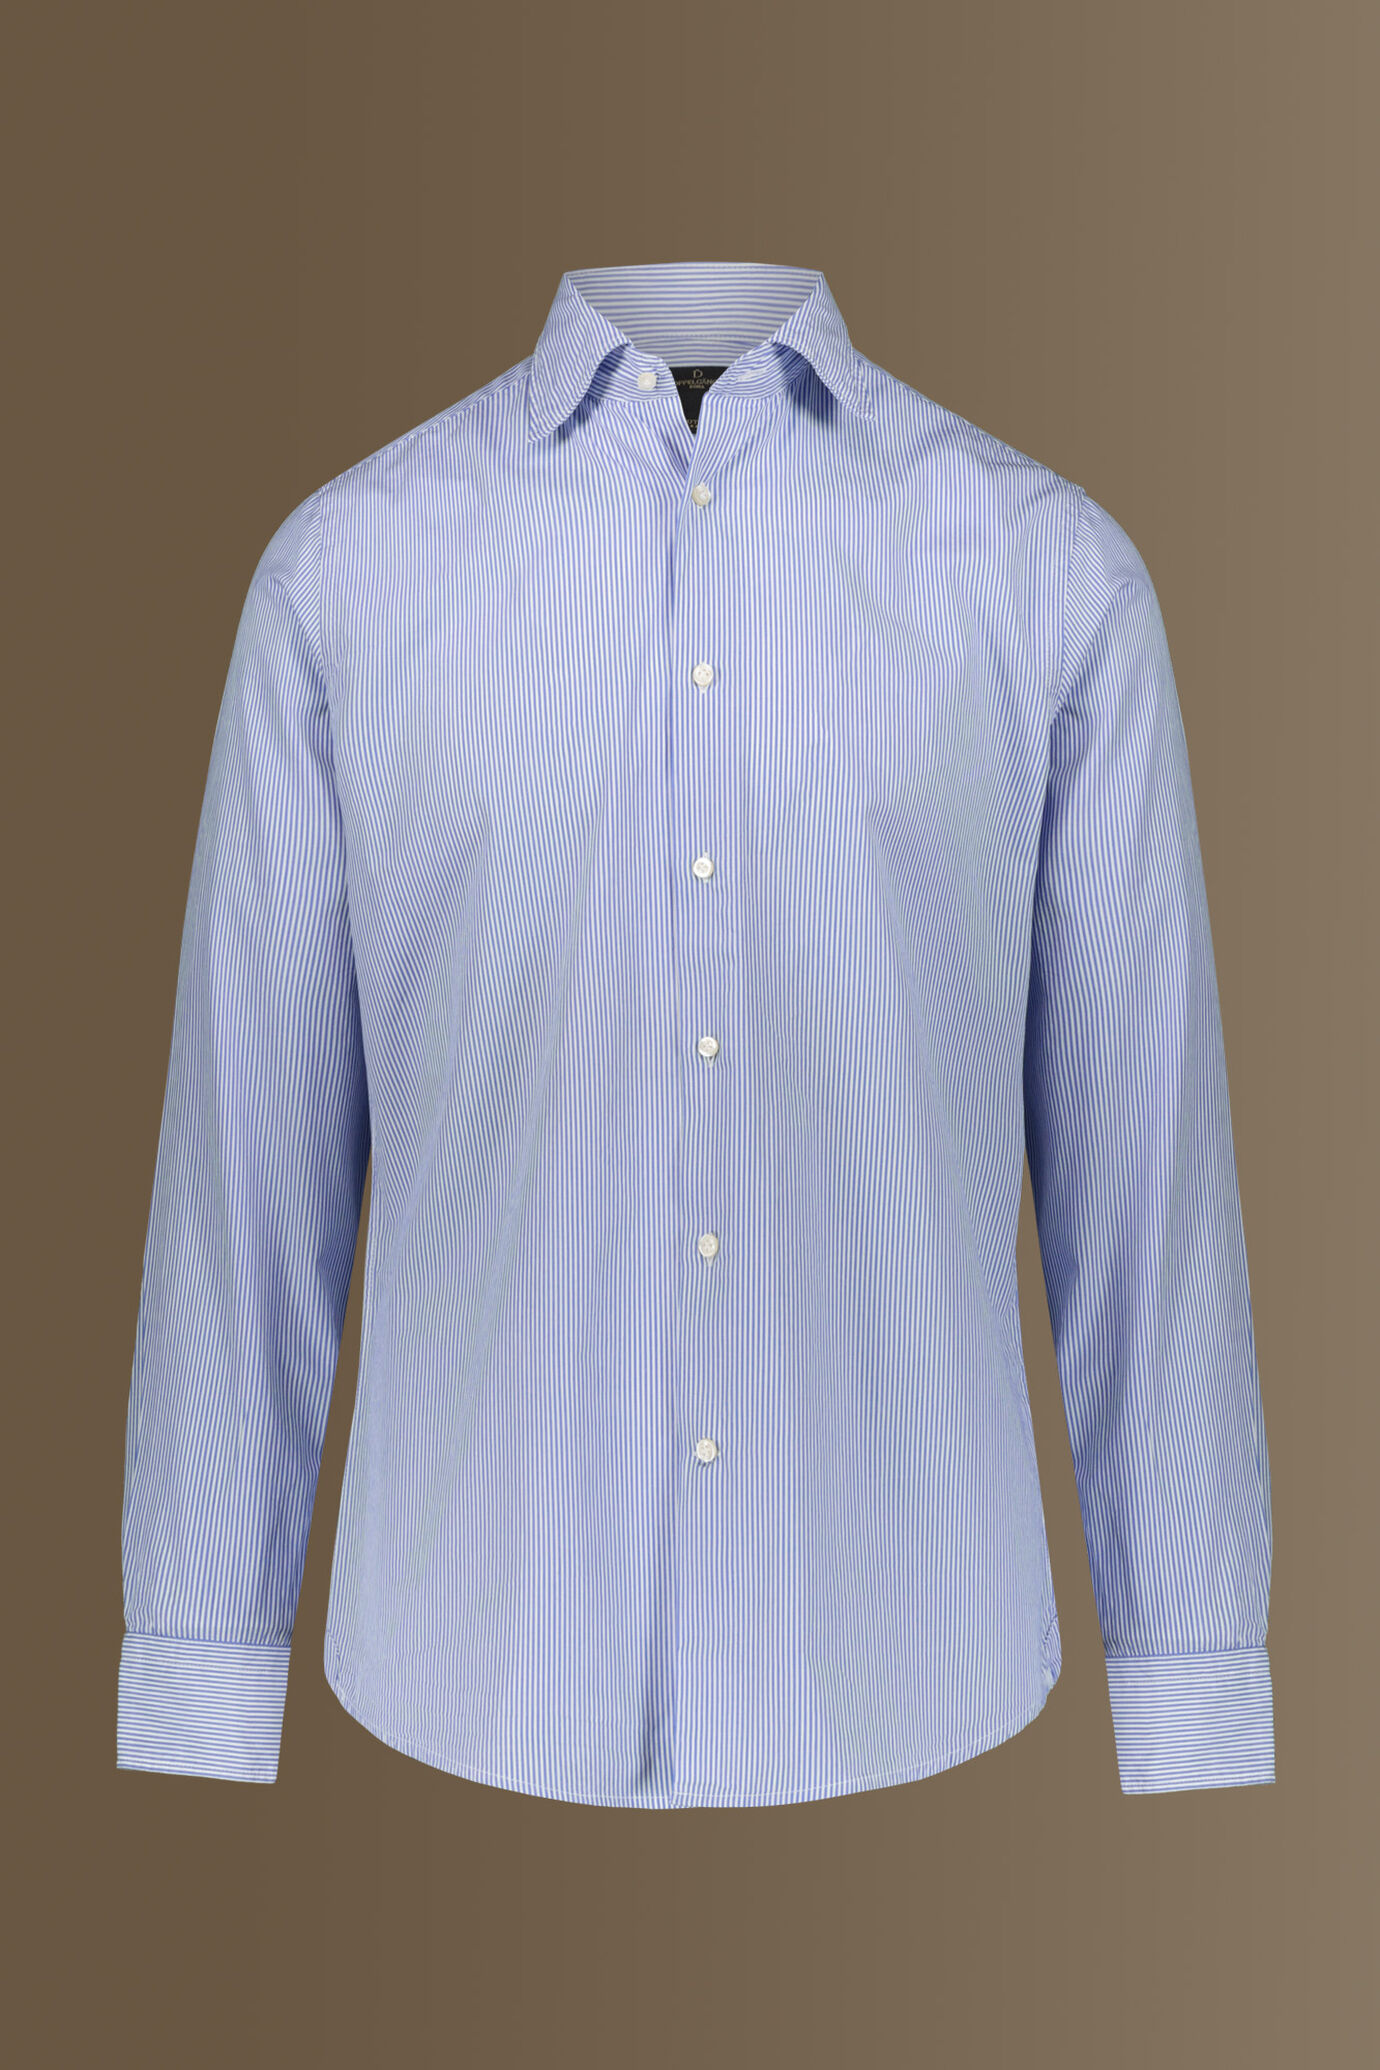 Camicia uomo classica lavata 100% cotone collo francese tinto filo popeline riga stretta image number 0